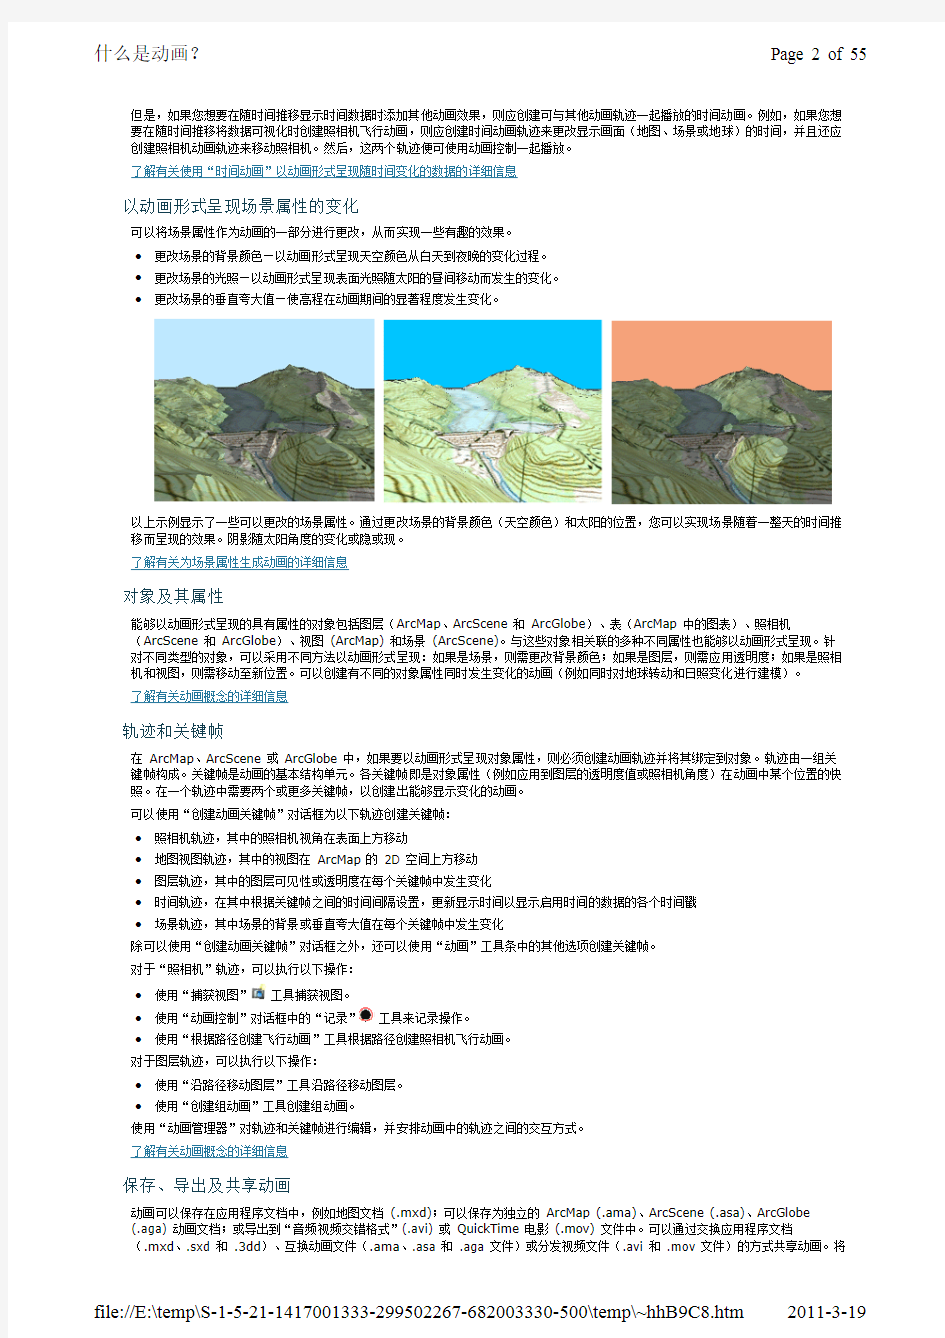 arcgis10中文帮助-专业库-制图和可视化16动画